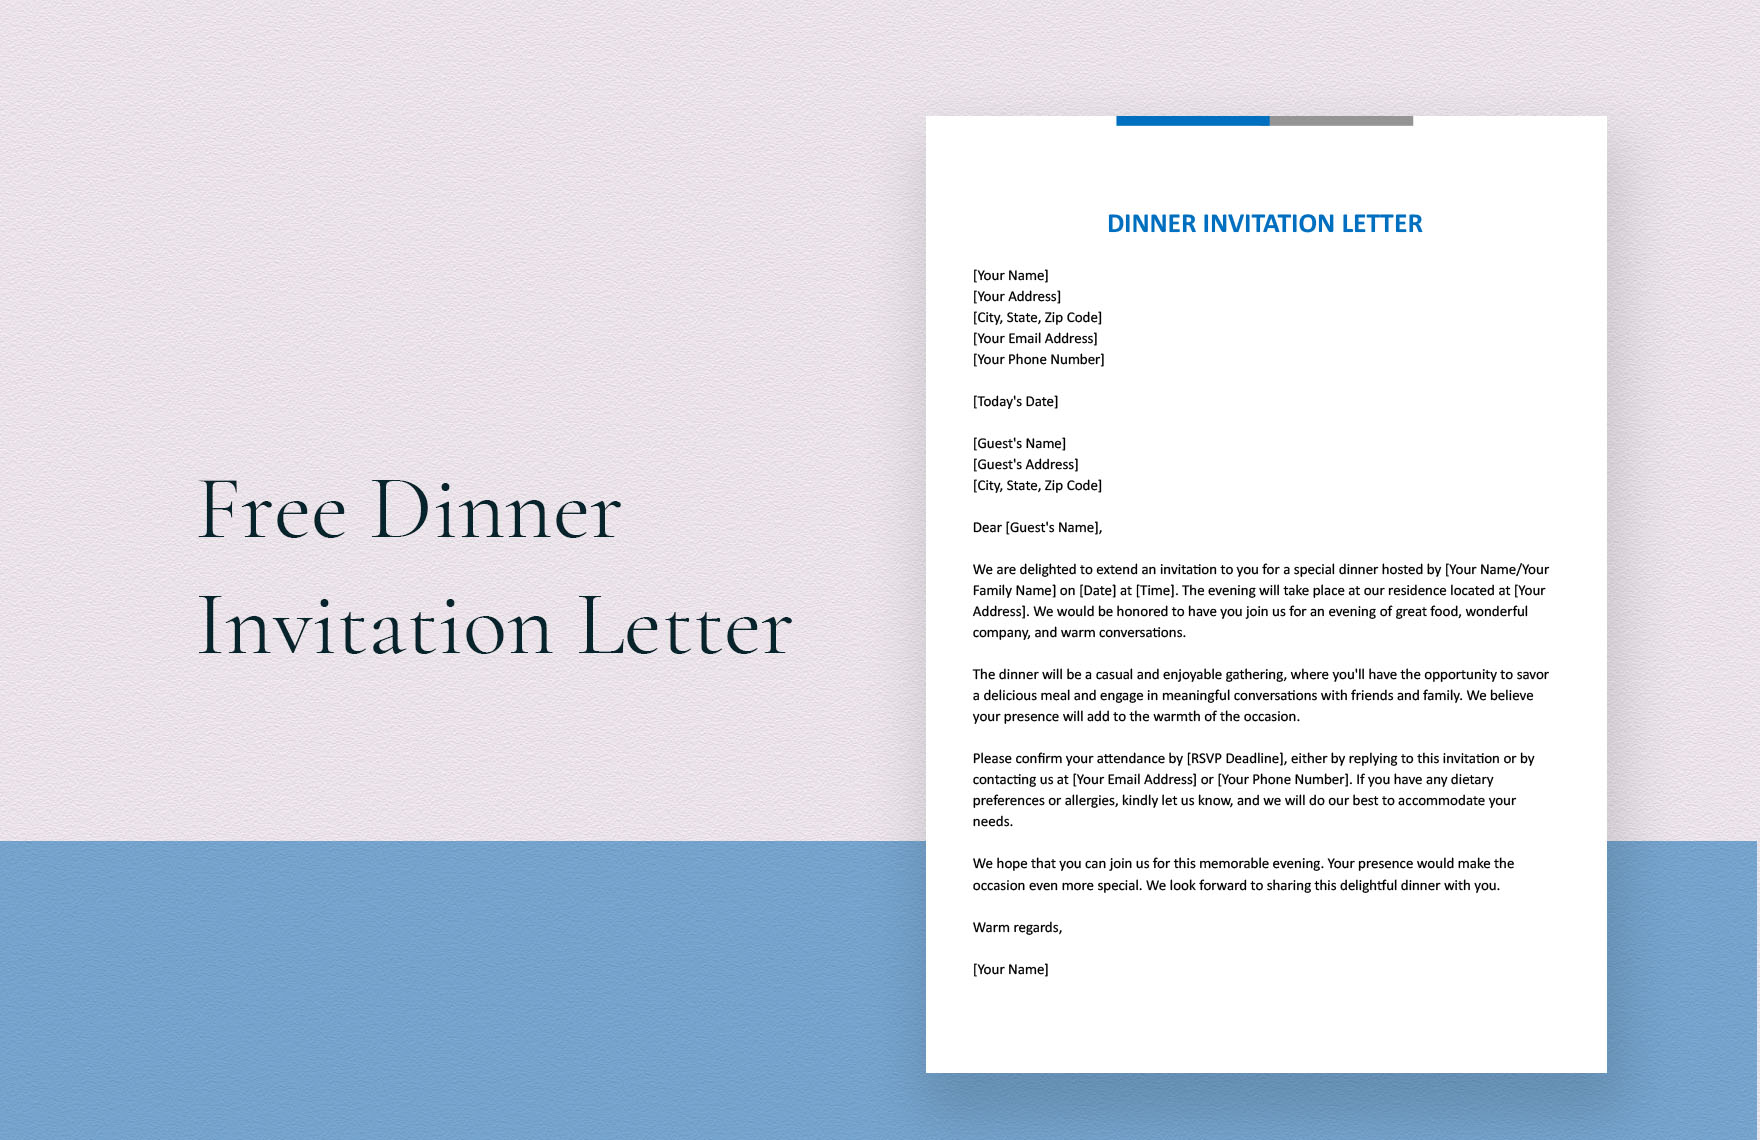 Dinner Invitation Letter